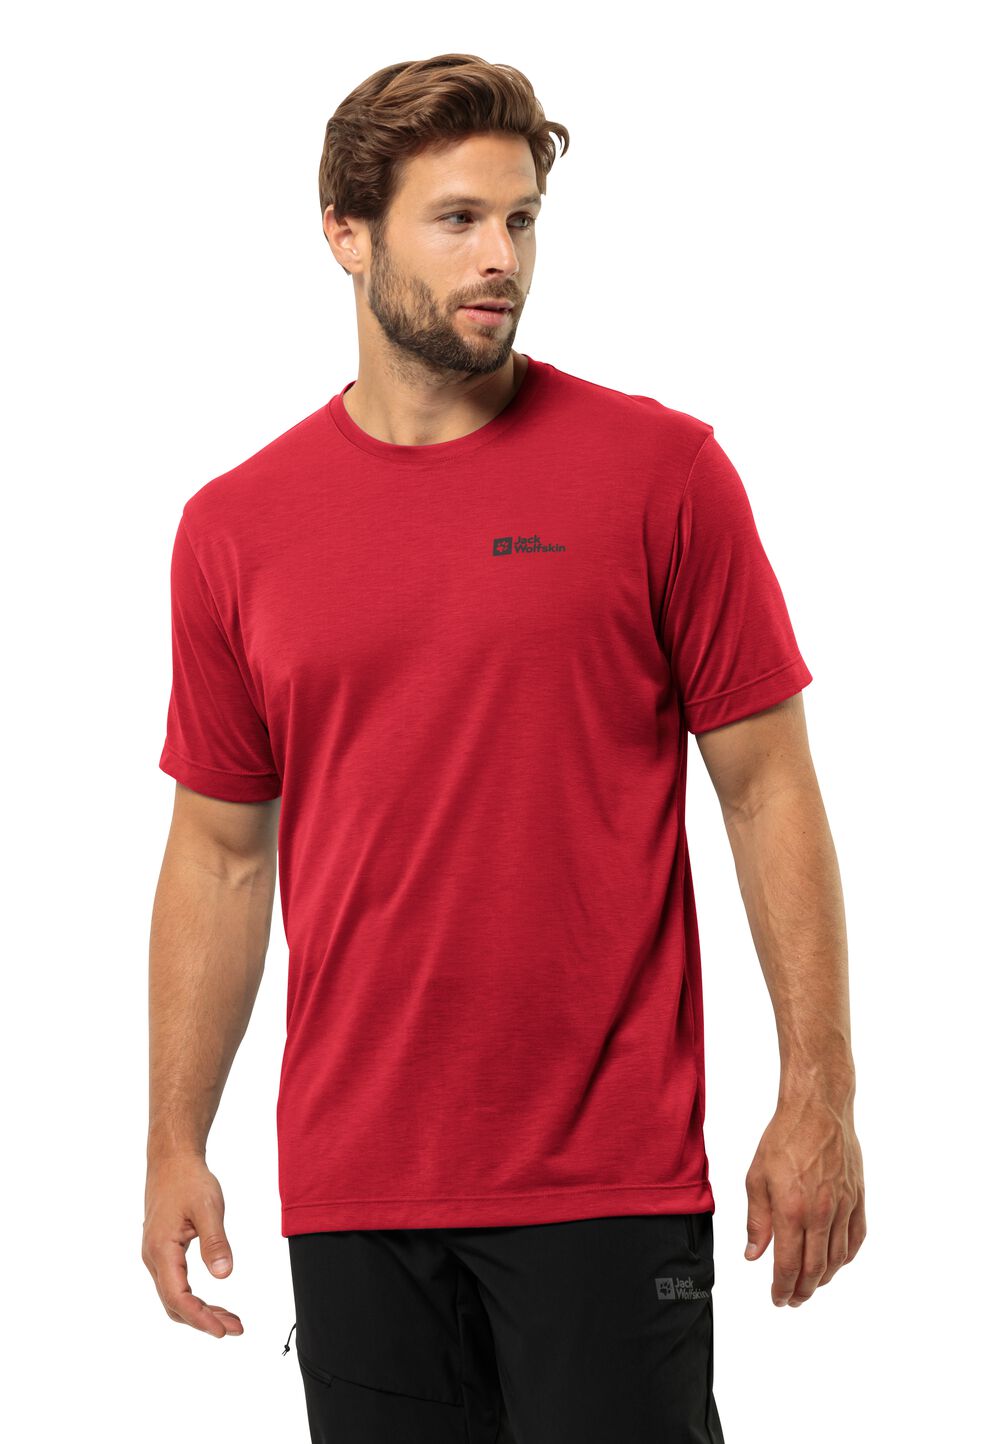 Jack Wolfskin Vonnan S S T-Shirt Men Functioneel shirt Heren 3XL rood red glow